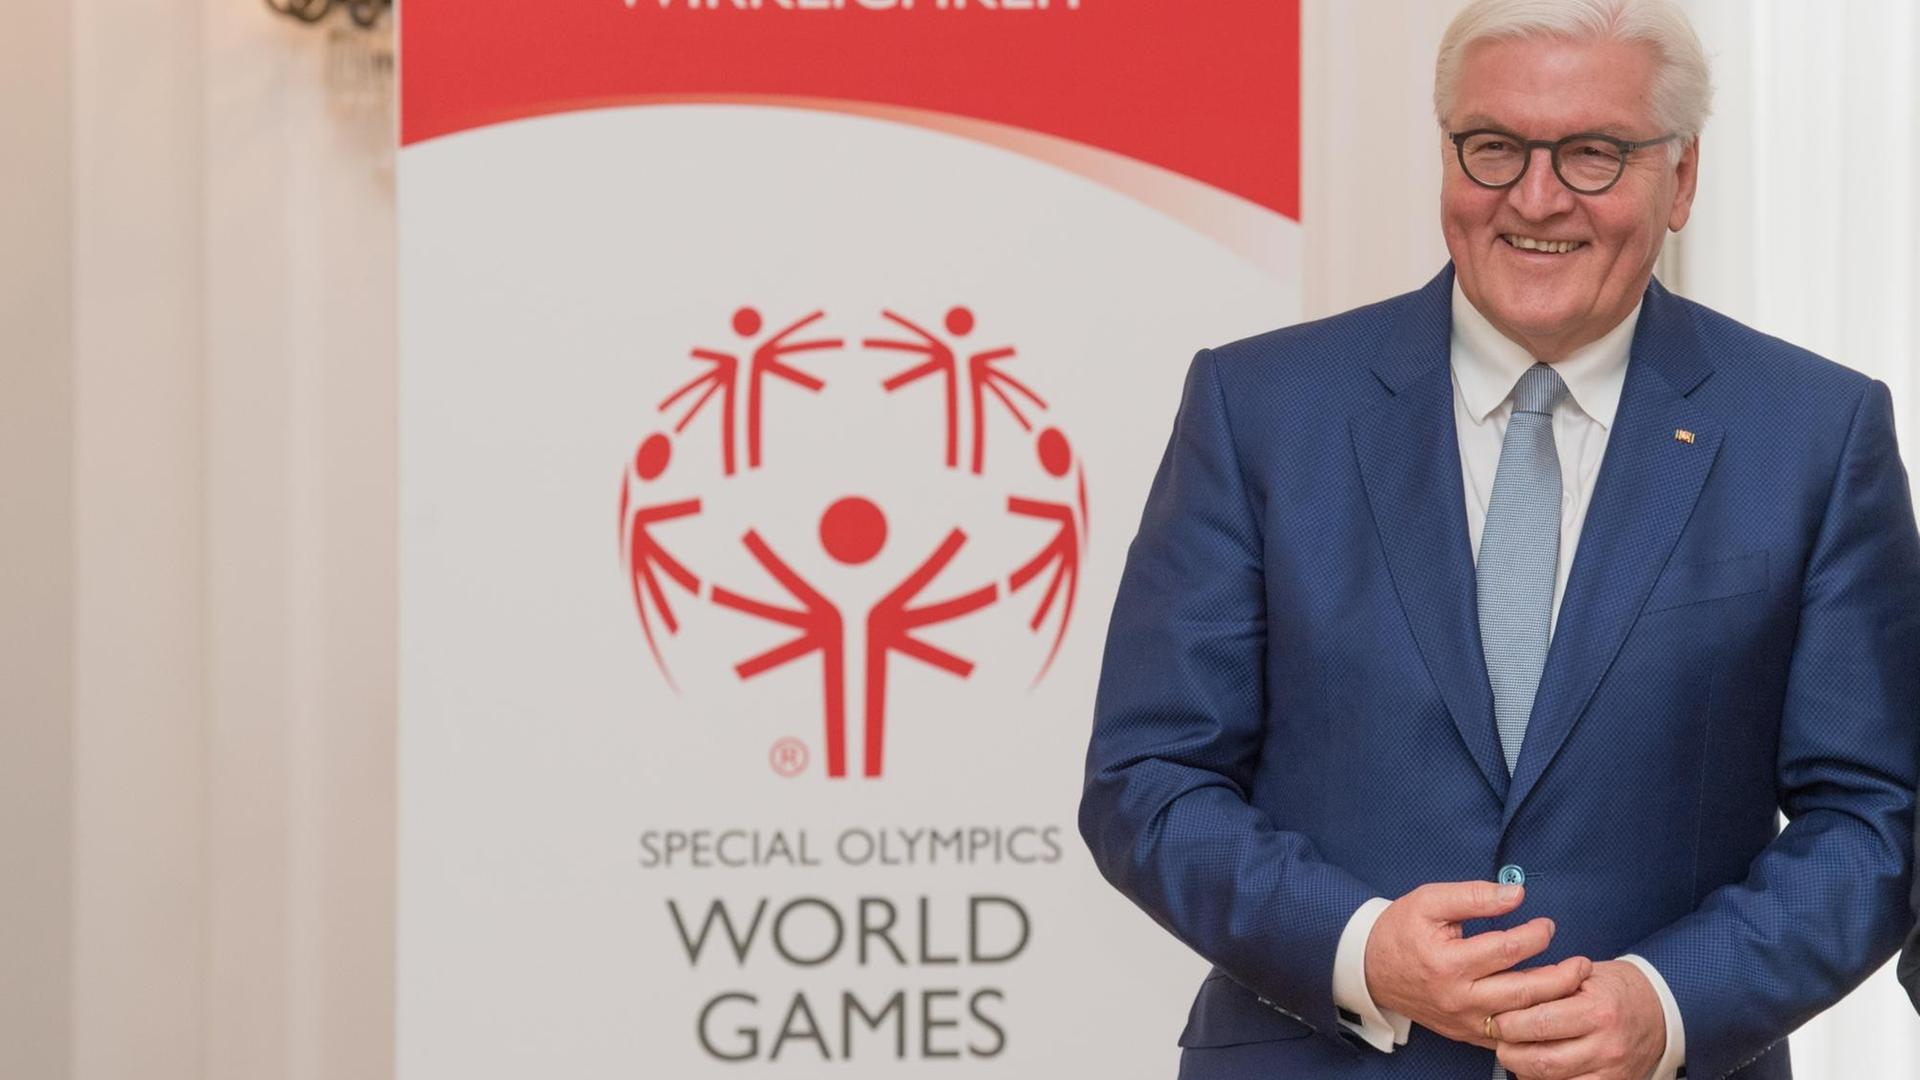 Bundespräsident Frank-Walter Steinmeier spricht bei der Vertragsunterzeichnung der Special Olympics World Games 2023.